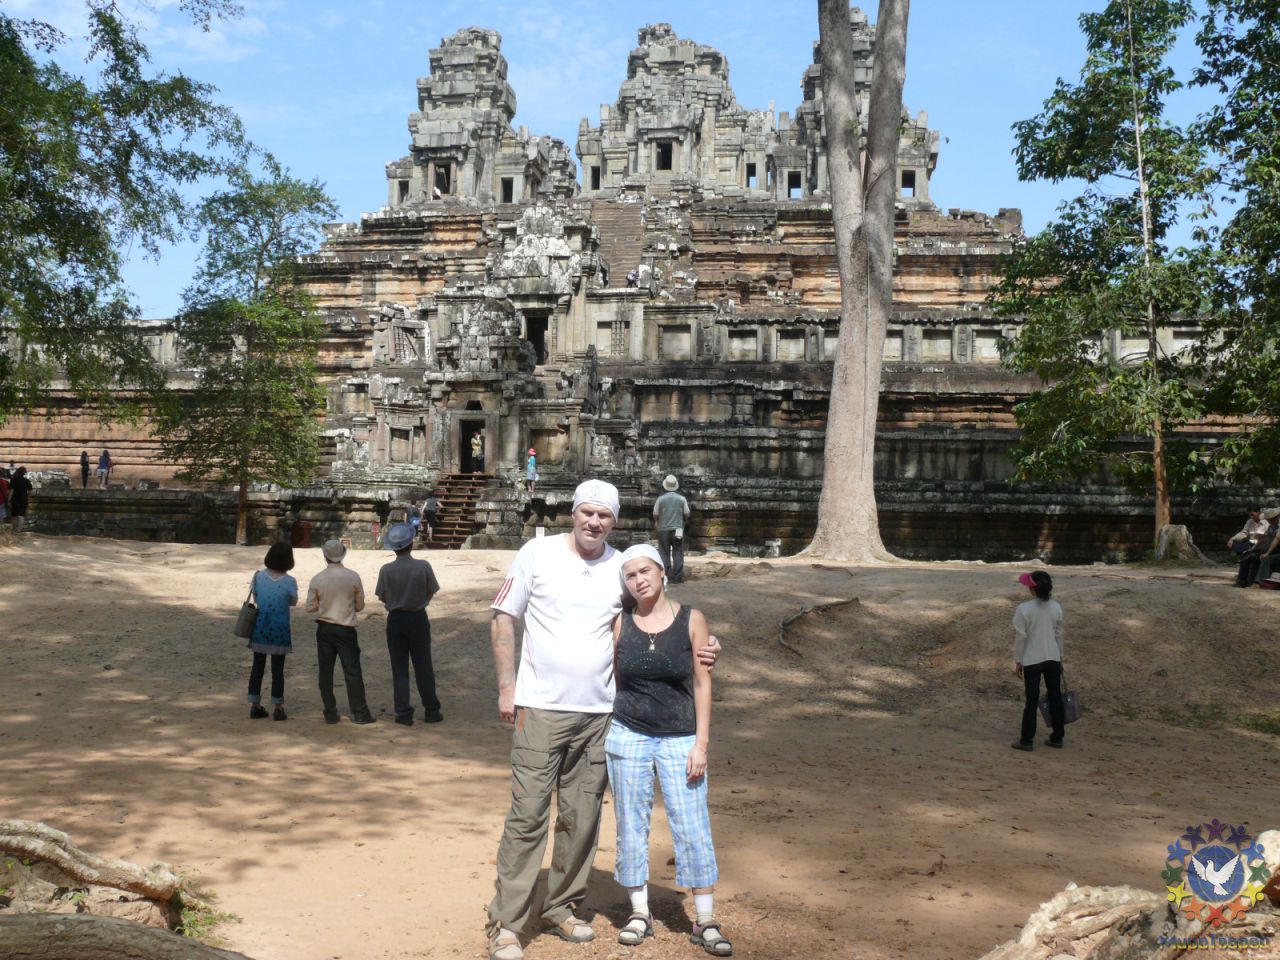 Храм пирамидальной формы Пре Руп (в переводе с кхмерского «Переворачивание тела») посвящён Шиве. - Камбоджа декабрь 2010г.